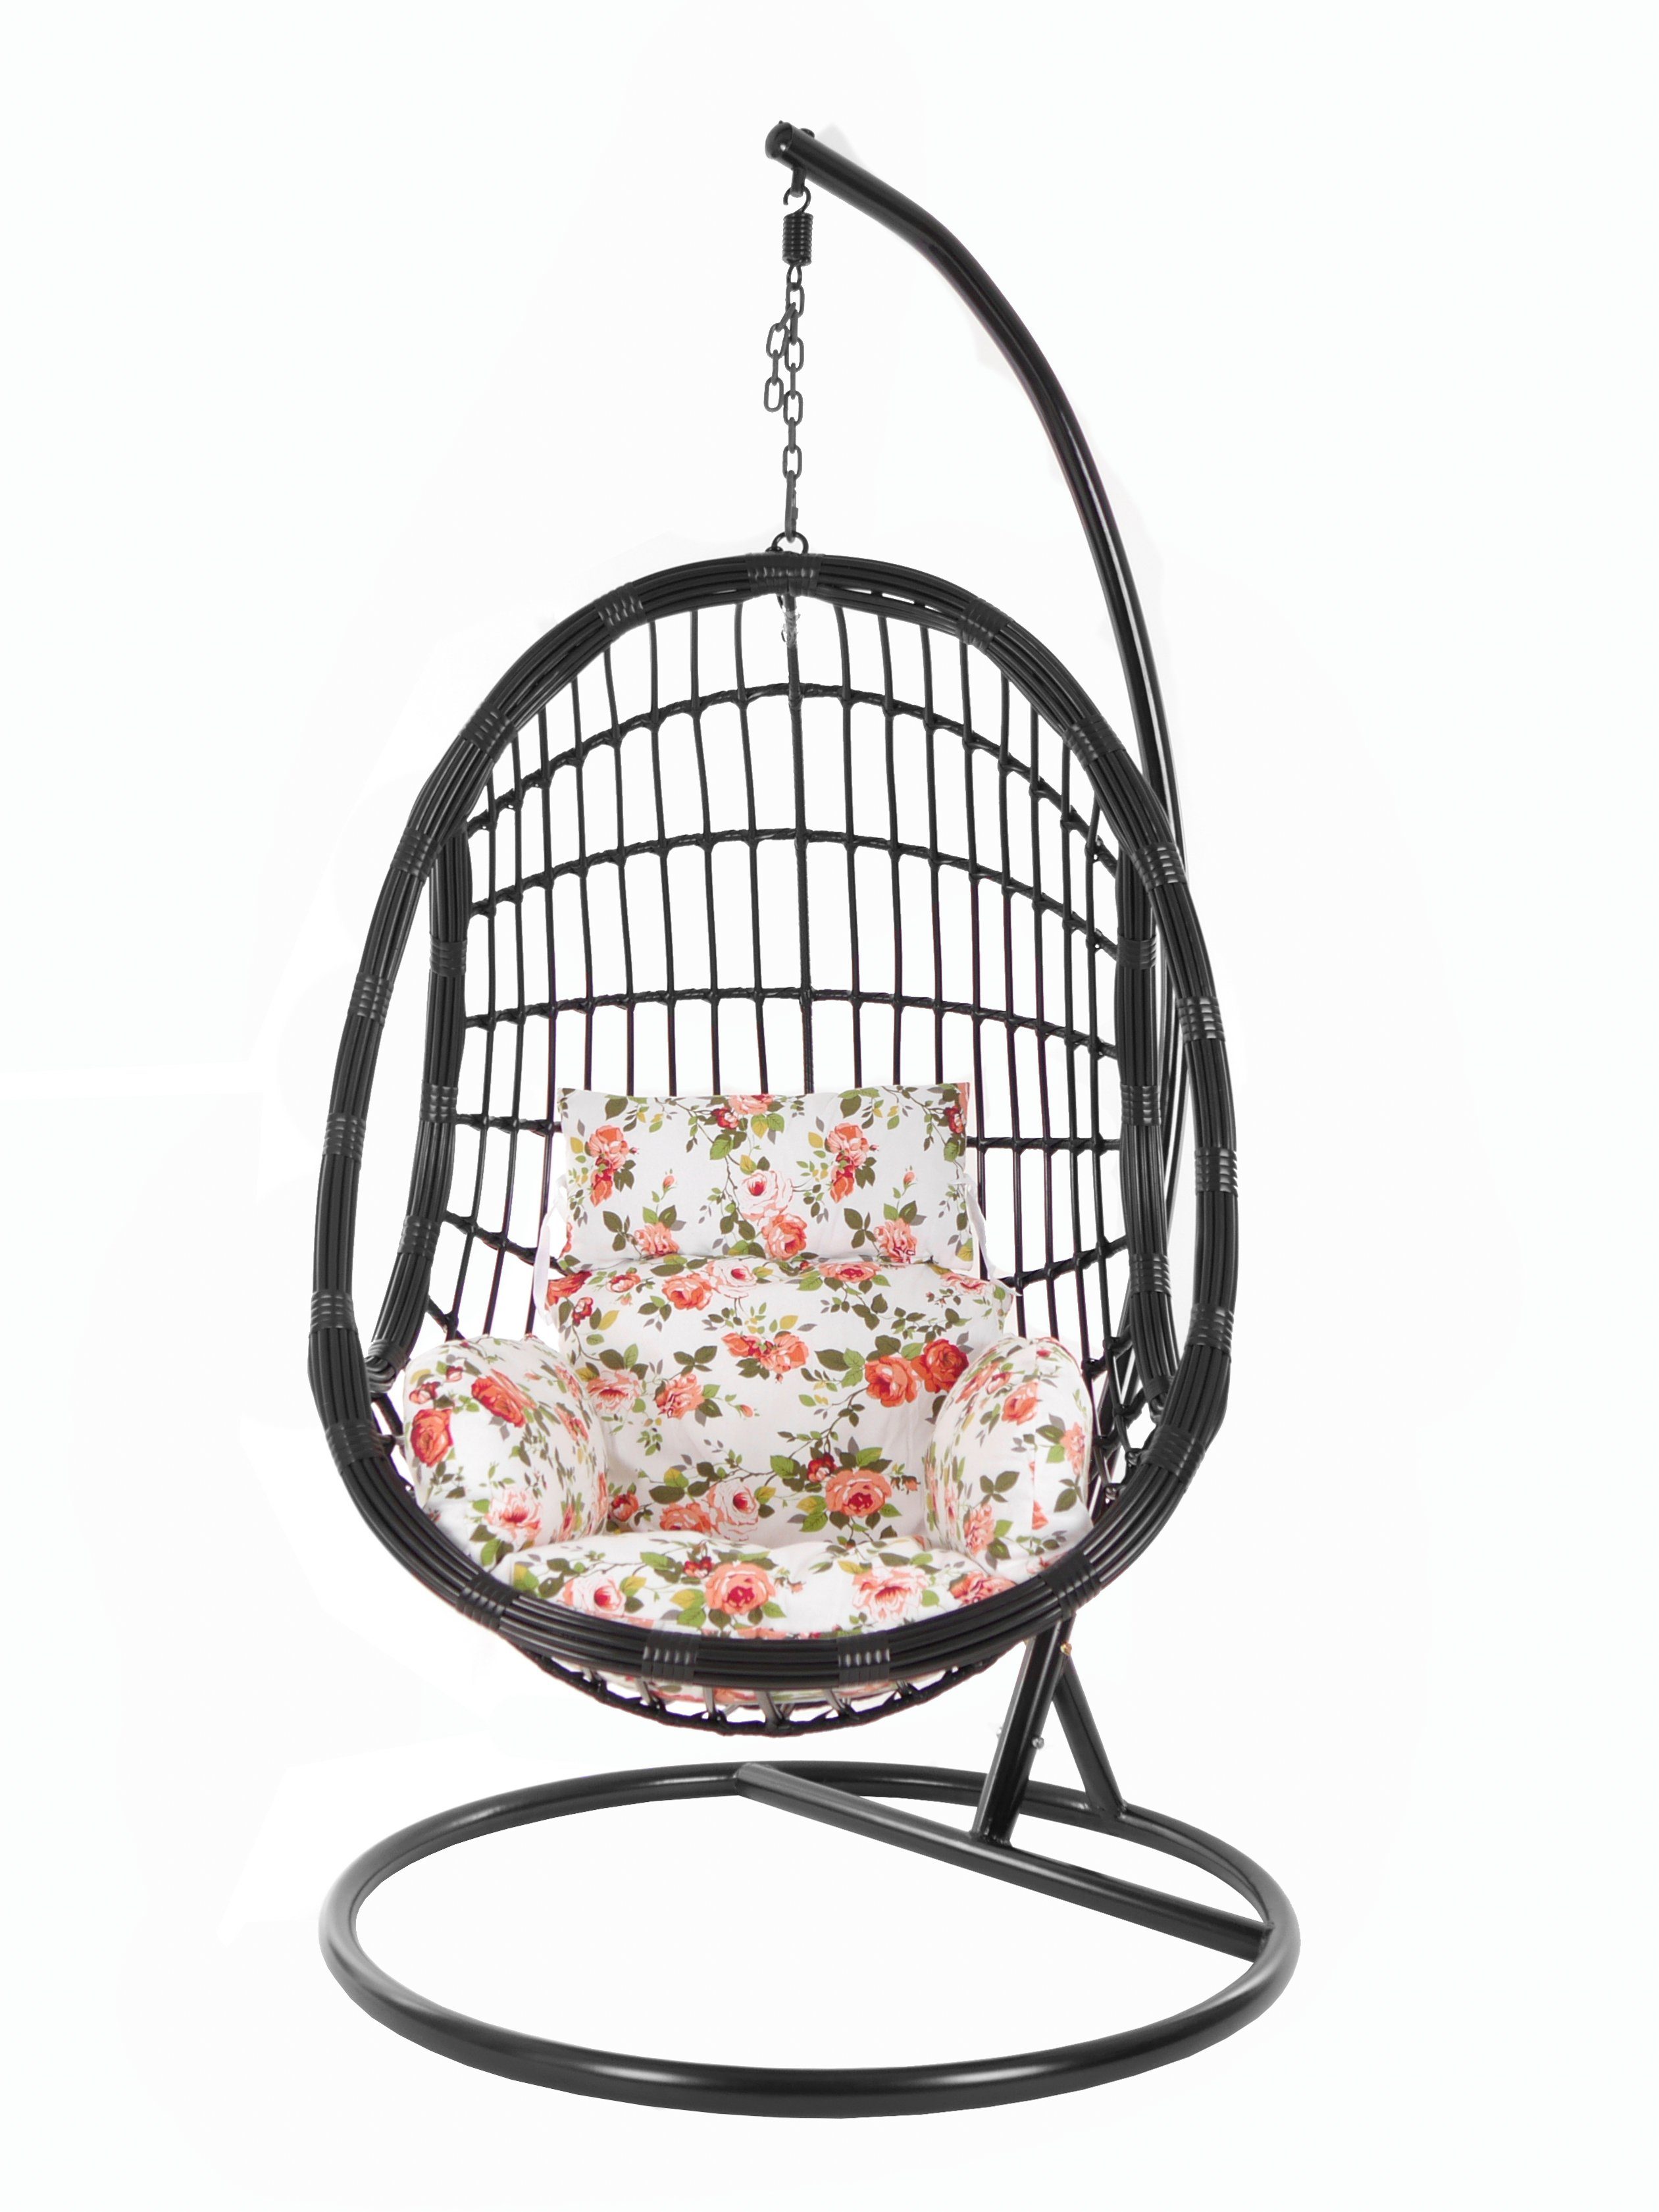 Muster (3761 Chair, Gestell black, KIDEO PALMANOVA Hängesessel Loungemöbel, mit Schwebesessel, Hängesessel rosen Schwarz, Kissen, roses) und Swing